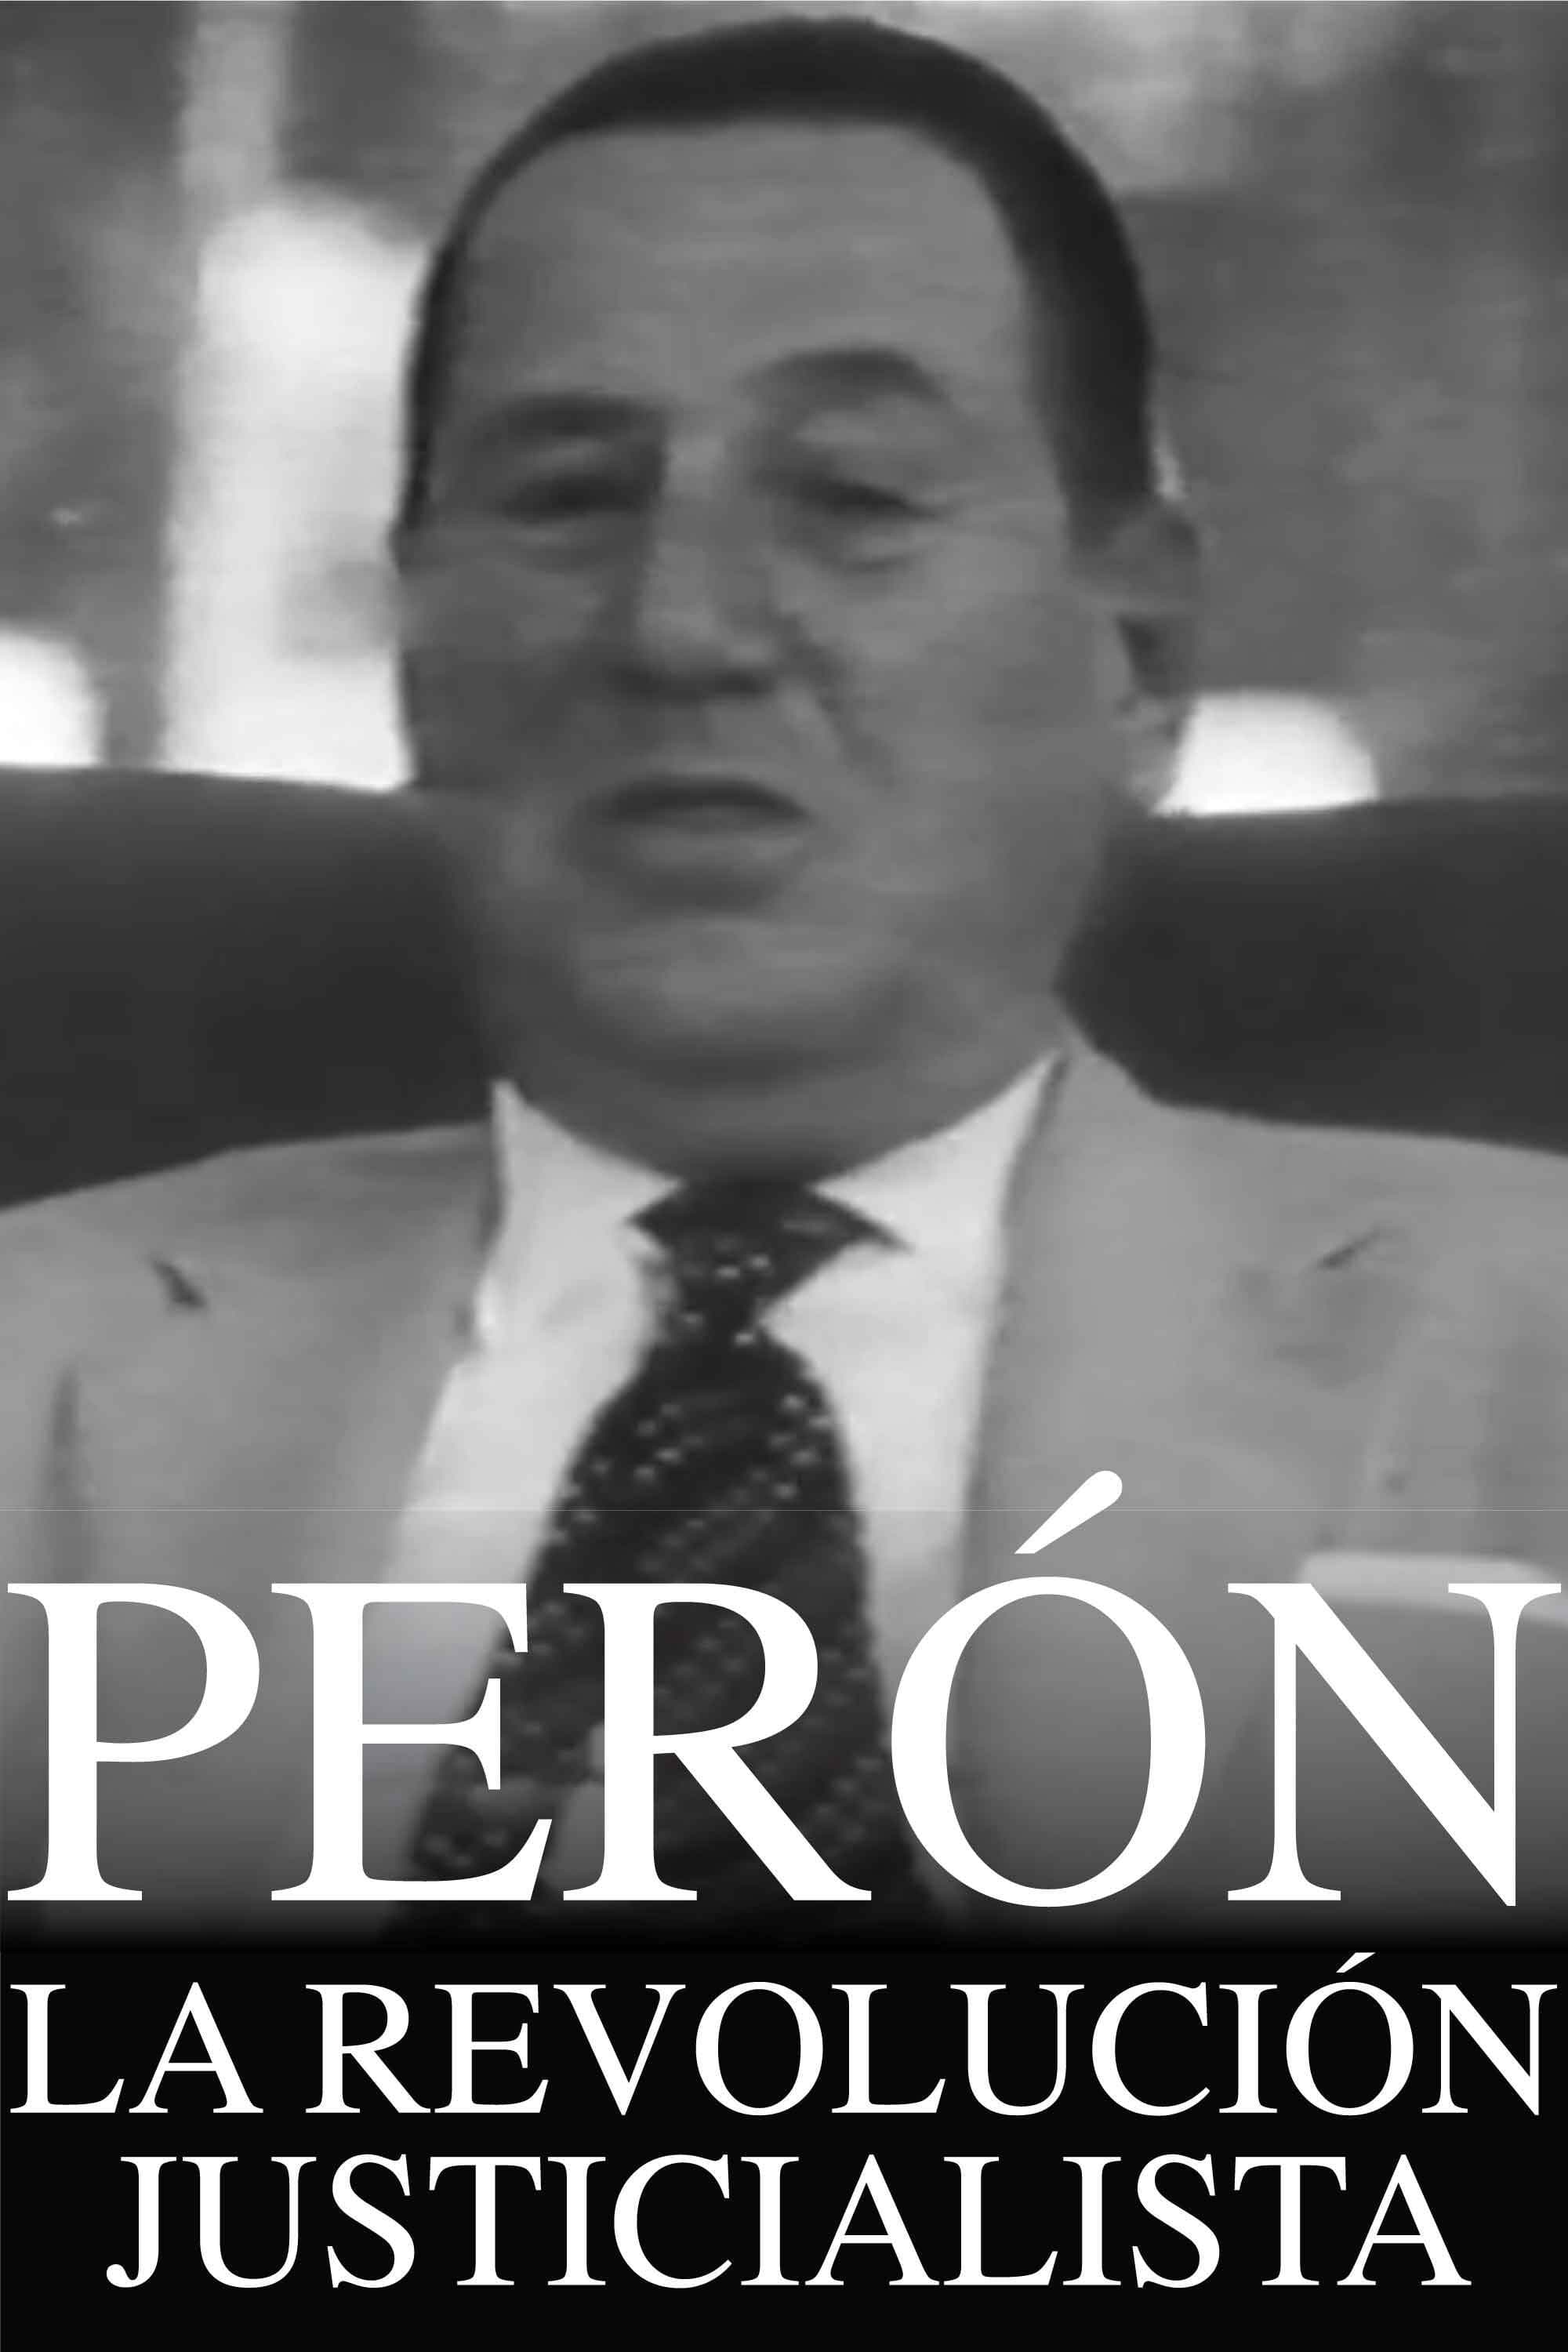 Perón: The Just Revolution